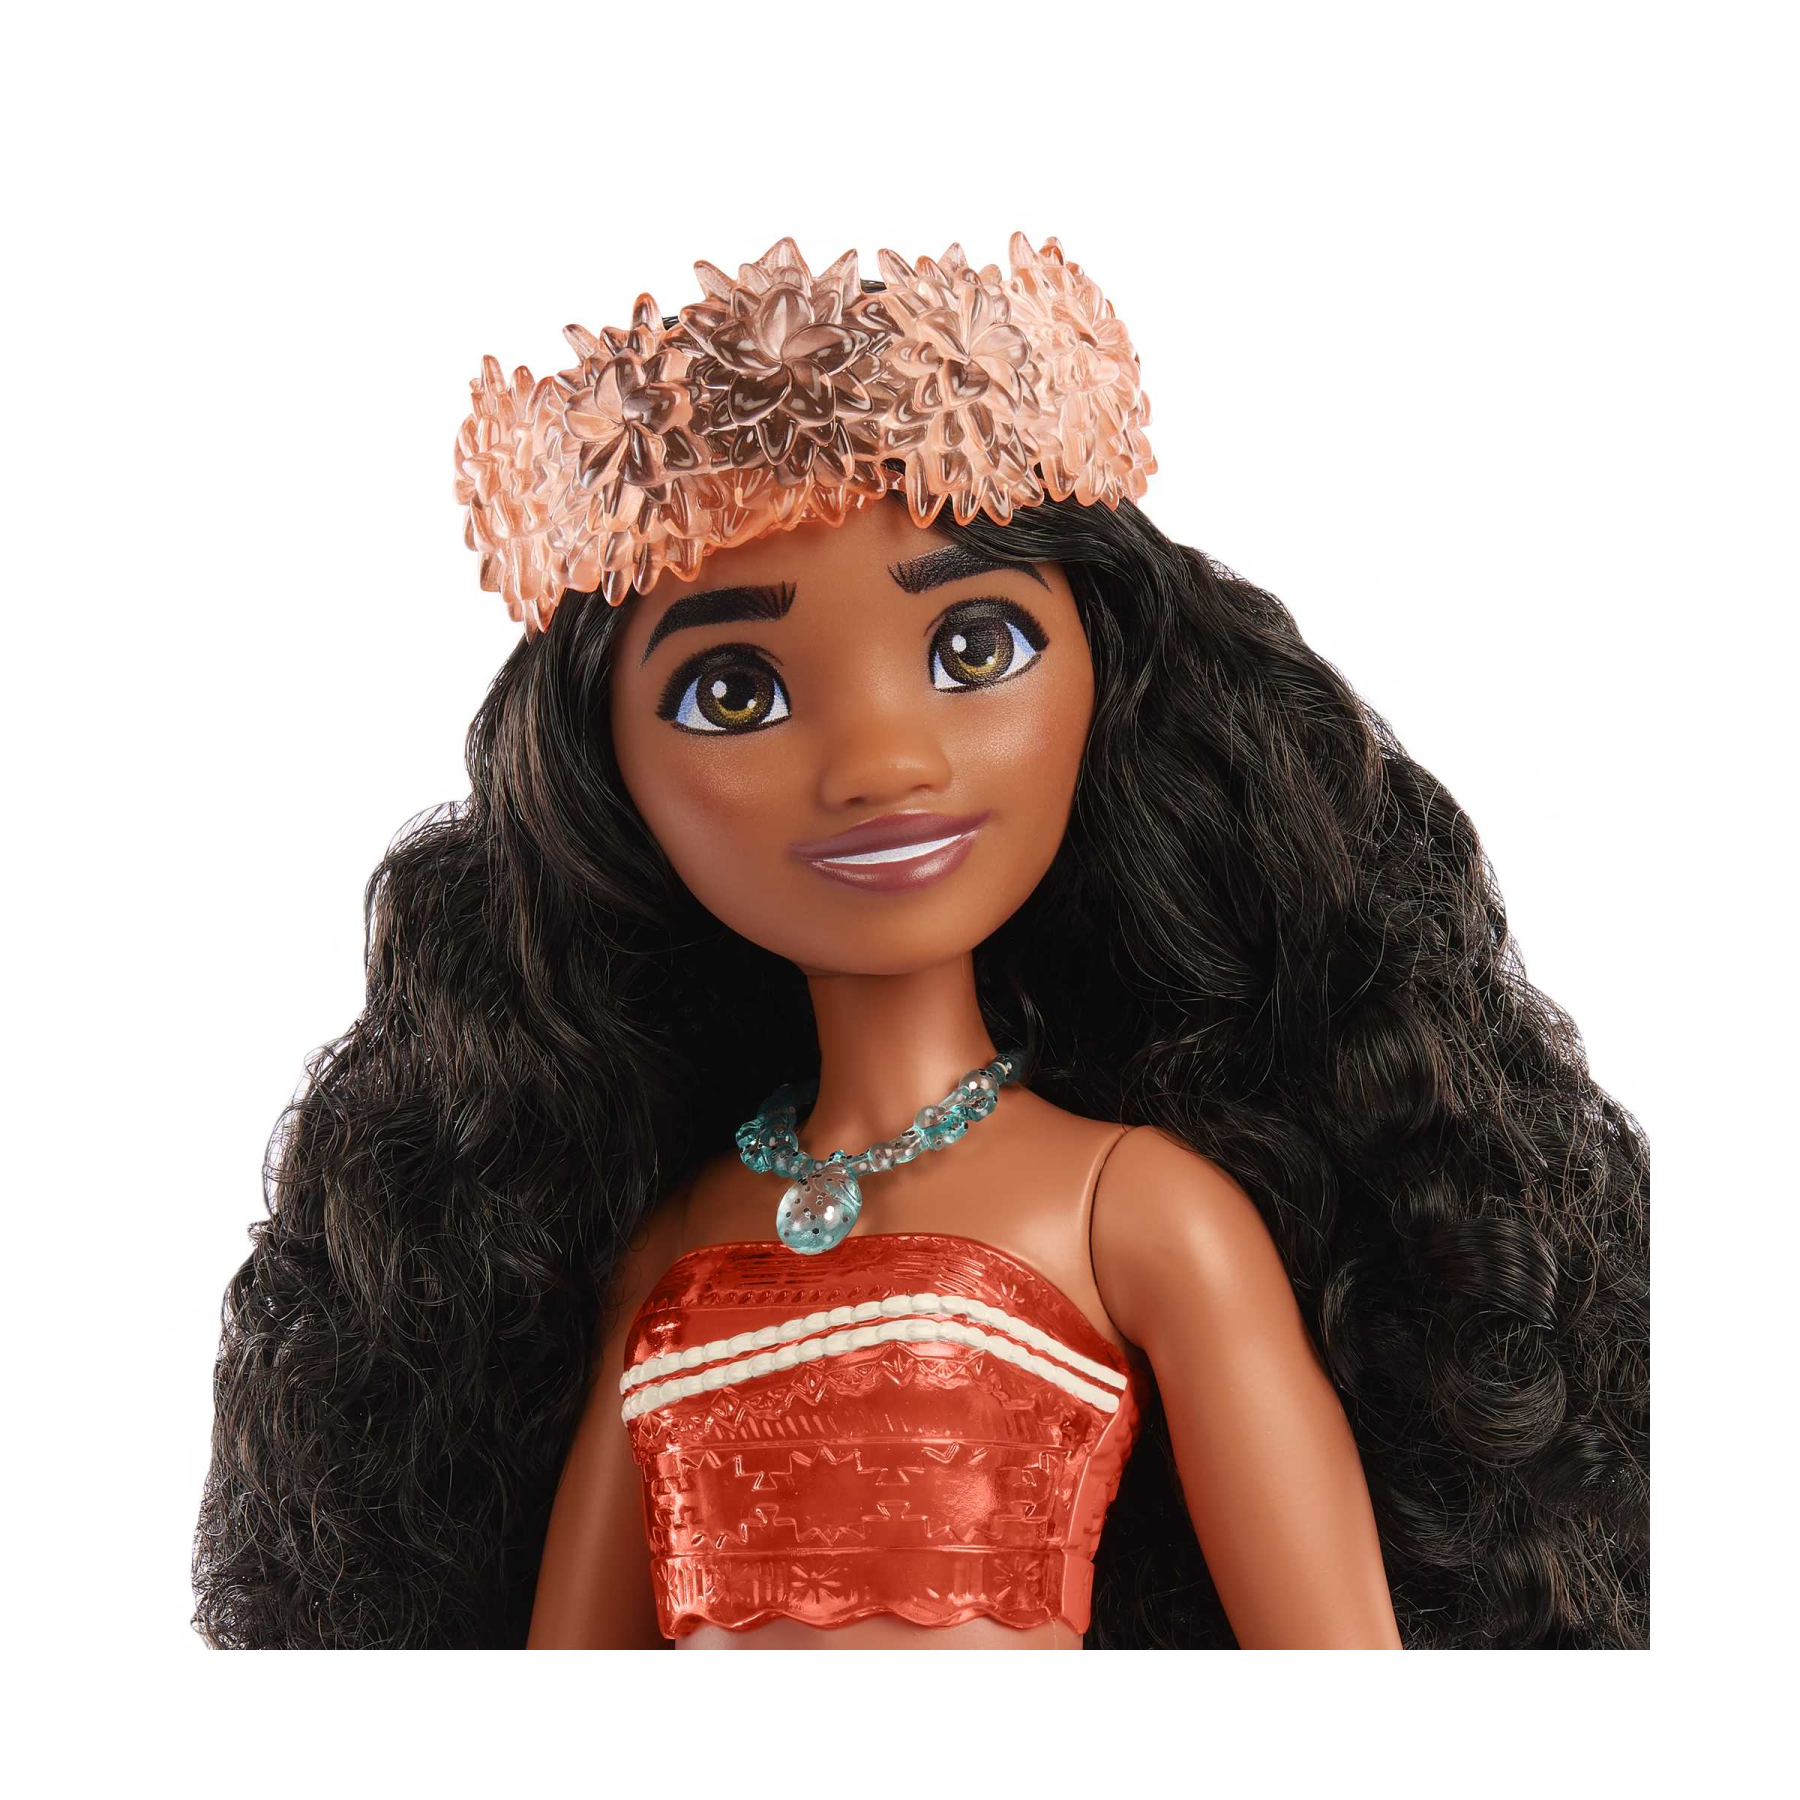 Disney princess - vaiana, bambola snodata con capi e accessori scintillanti ispirati al film disney, giocattolo per bambini, 3+ anni, hpg68 - DISNEY PRINCESS